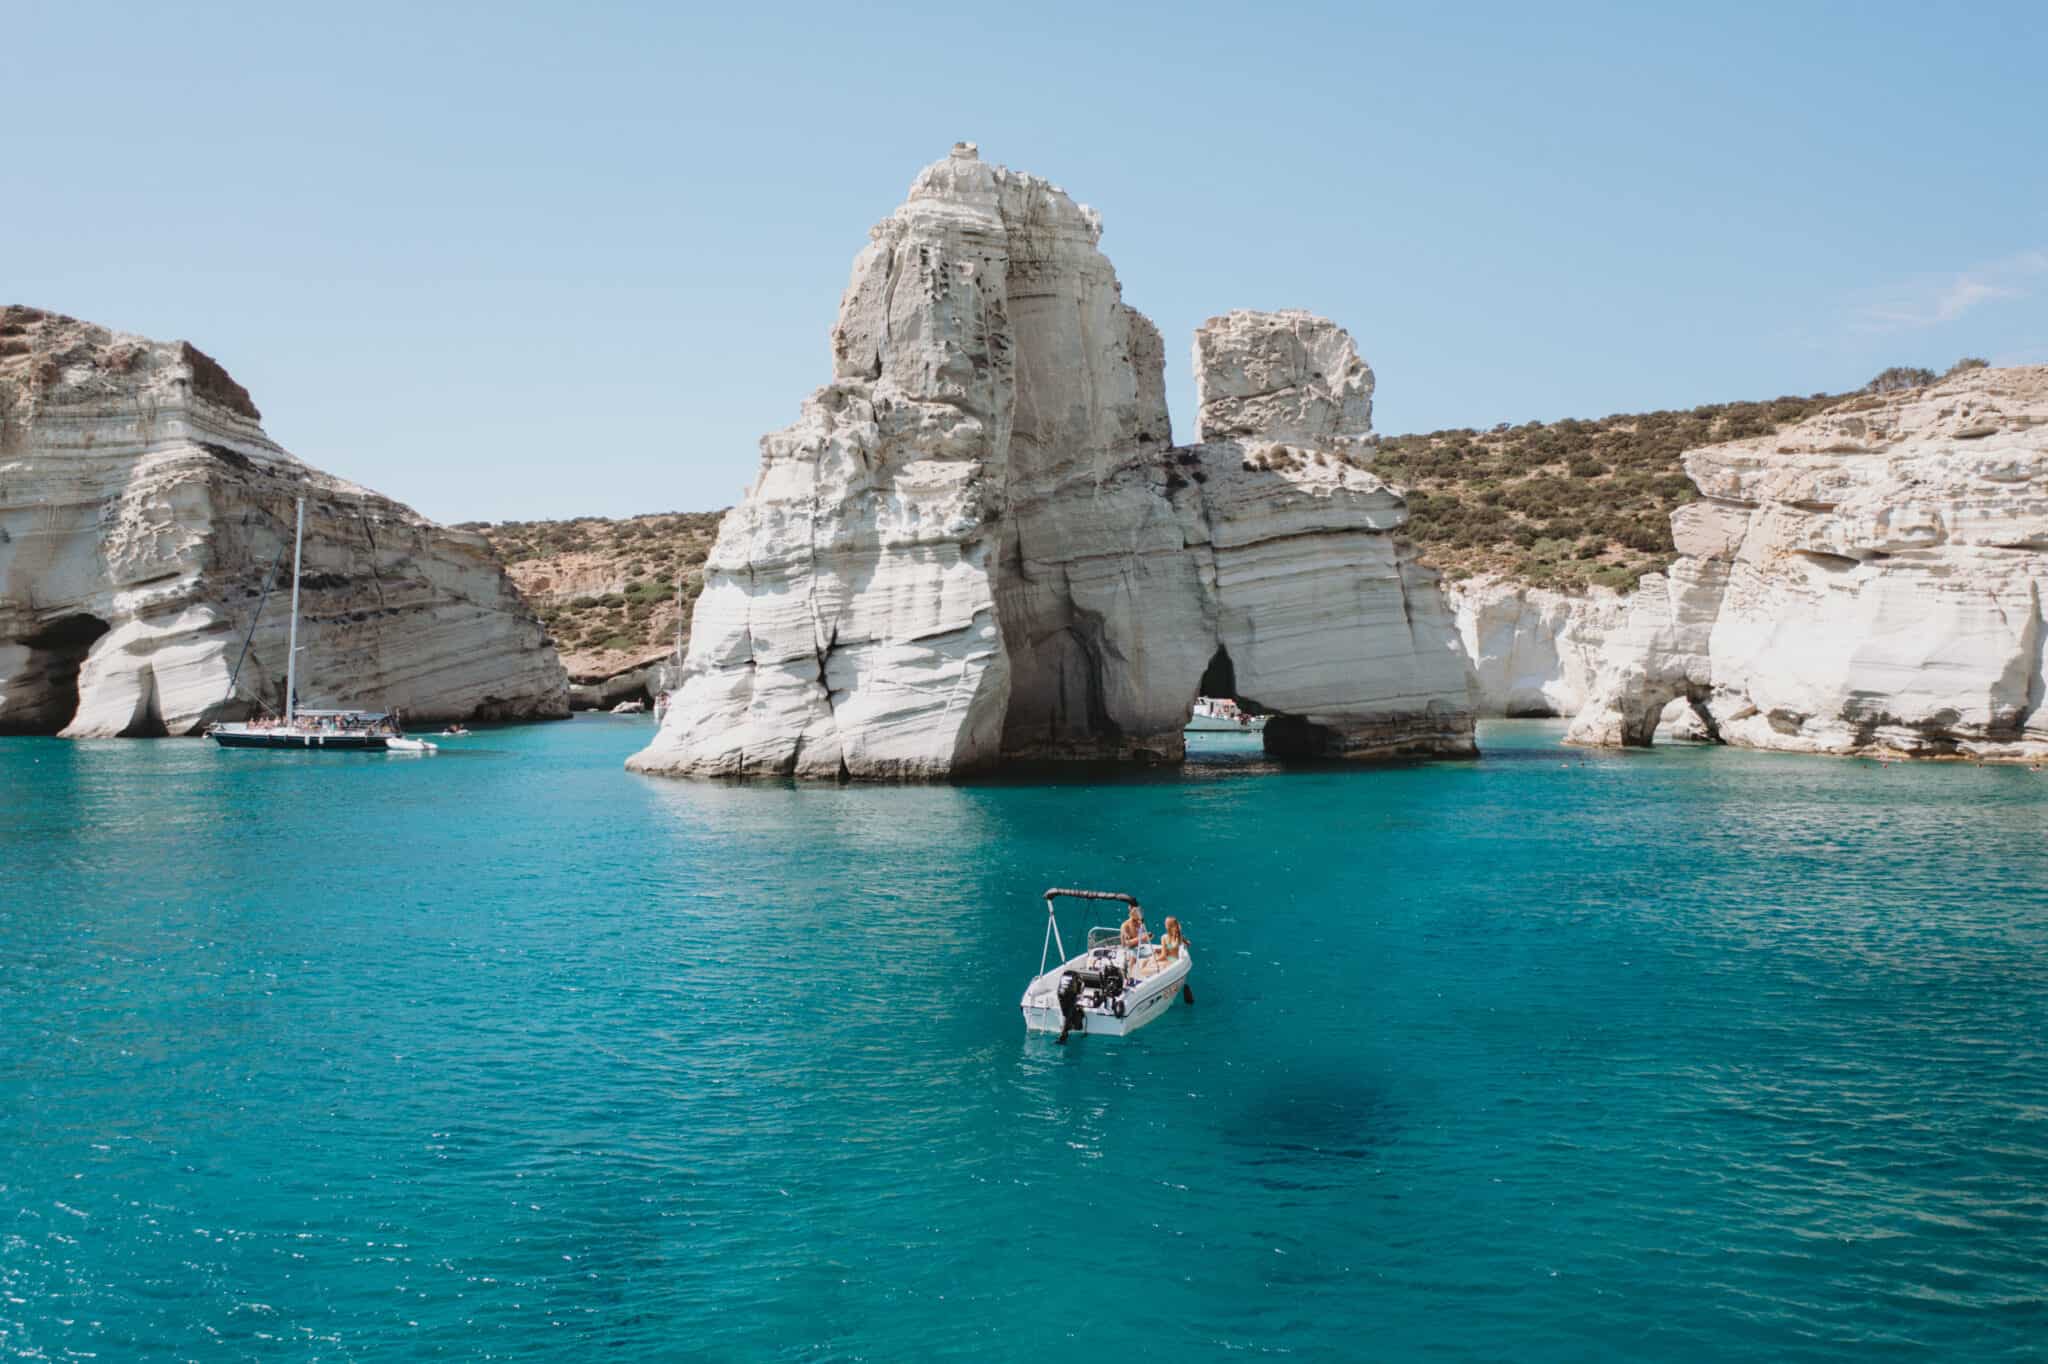 A boat is near a rock formation on Milos island, Greece.